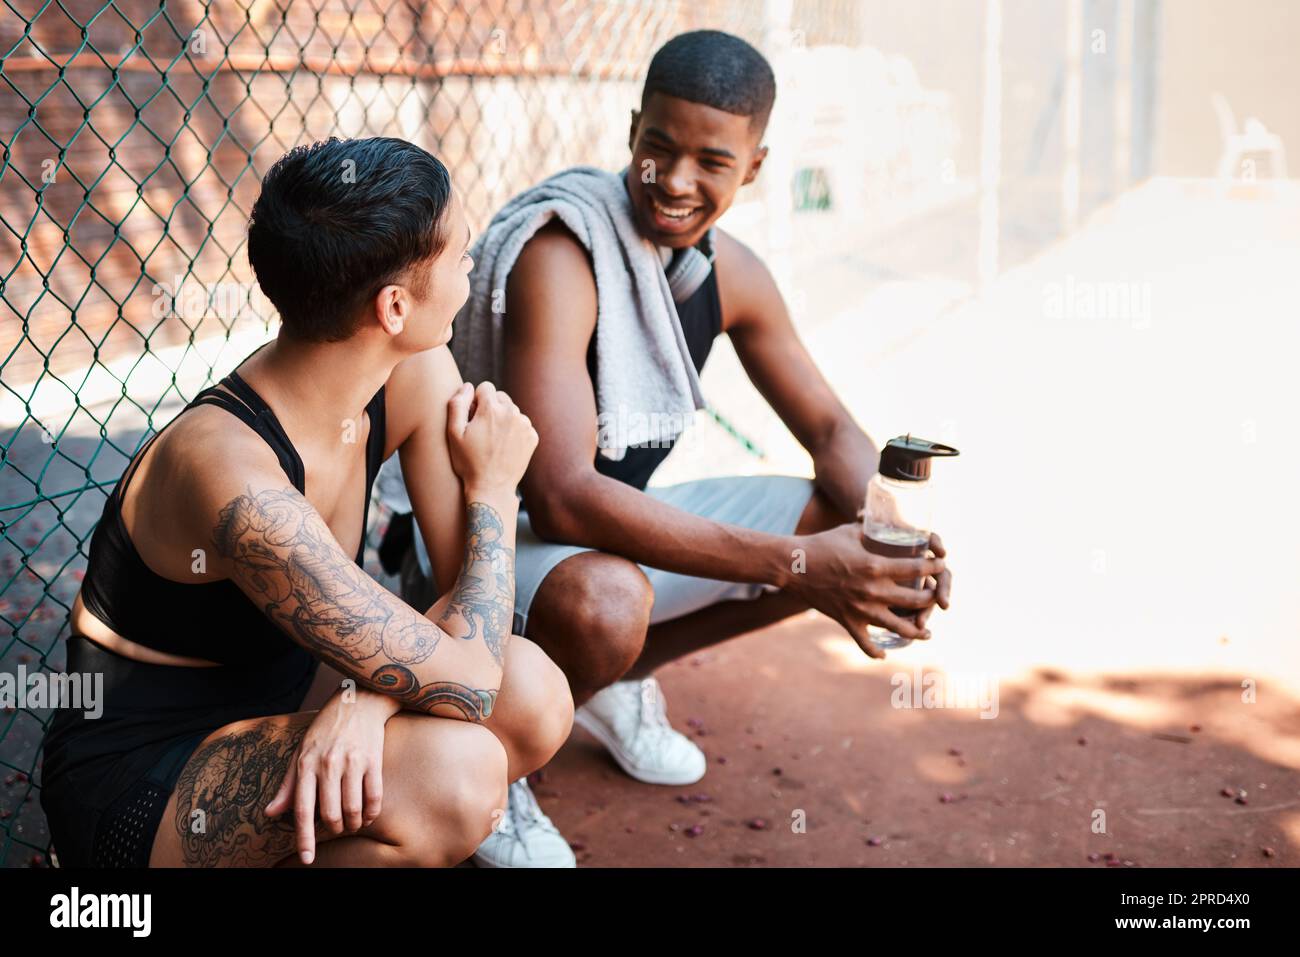 Deux jeunes sportifs bavardent les uns avec les autres contre une clôture en plein air. Banque D'Images